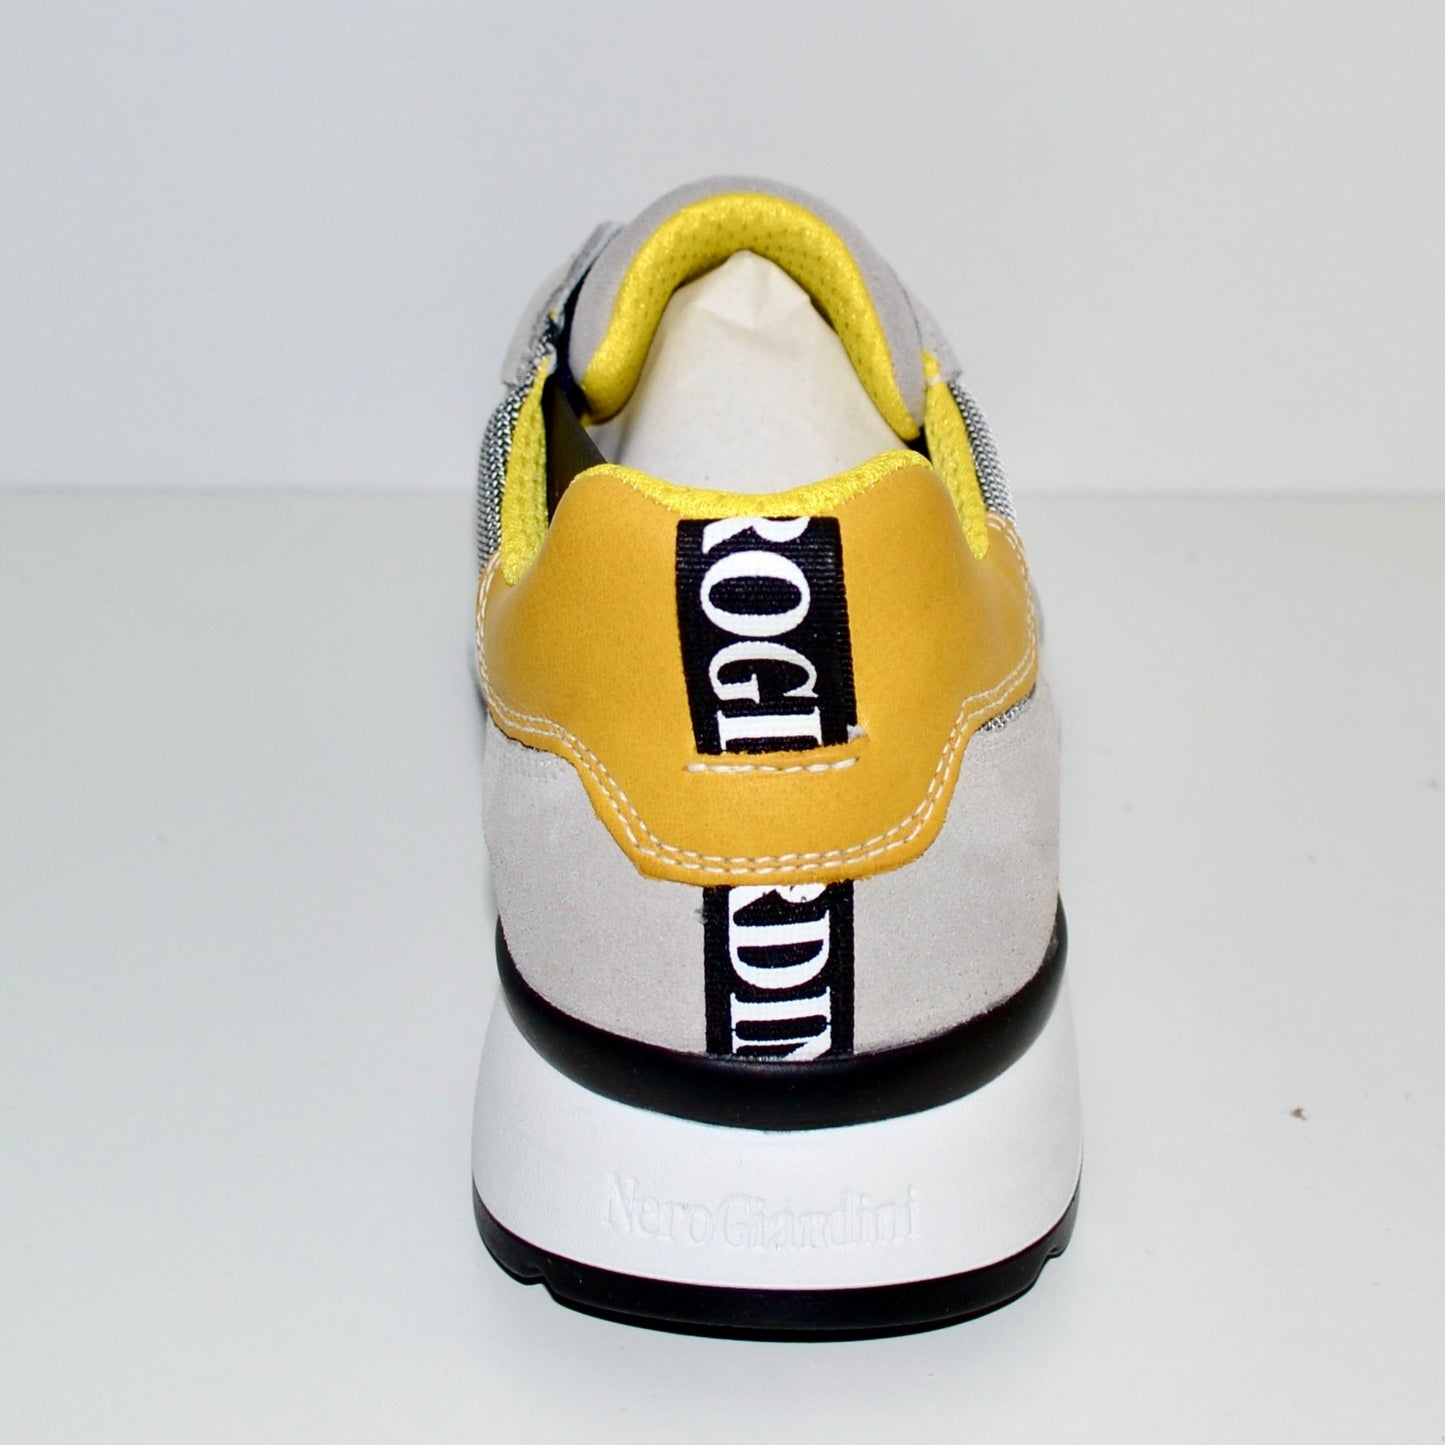 Sneakers NeroGiardini uomo pelle e tessuto grigio e giallo